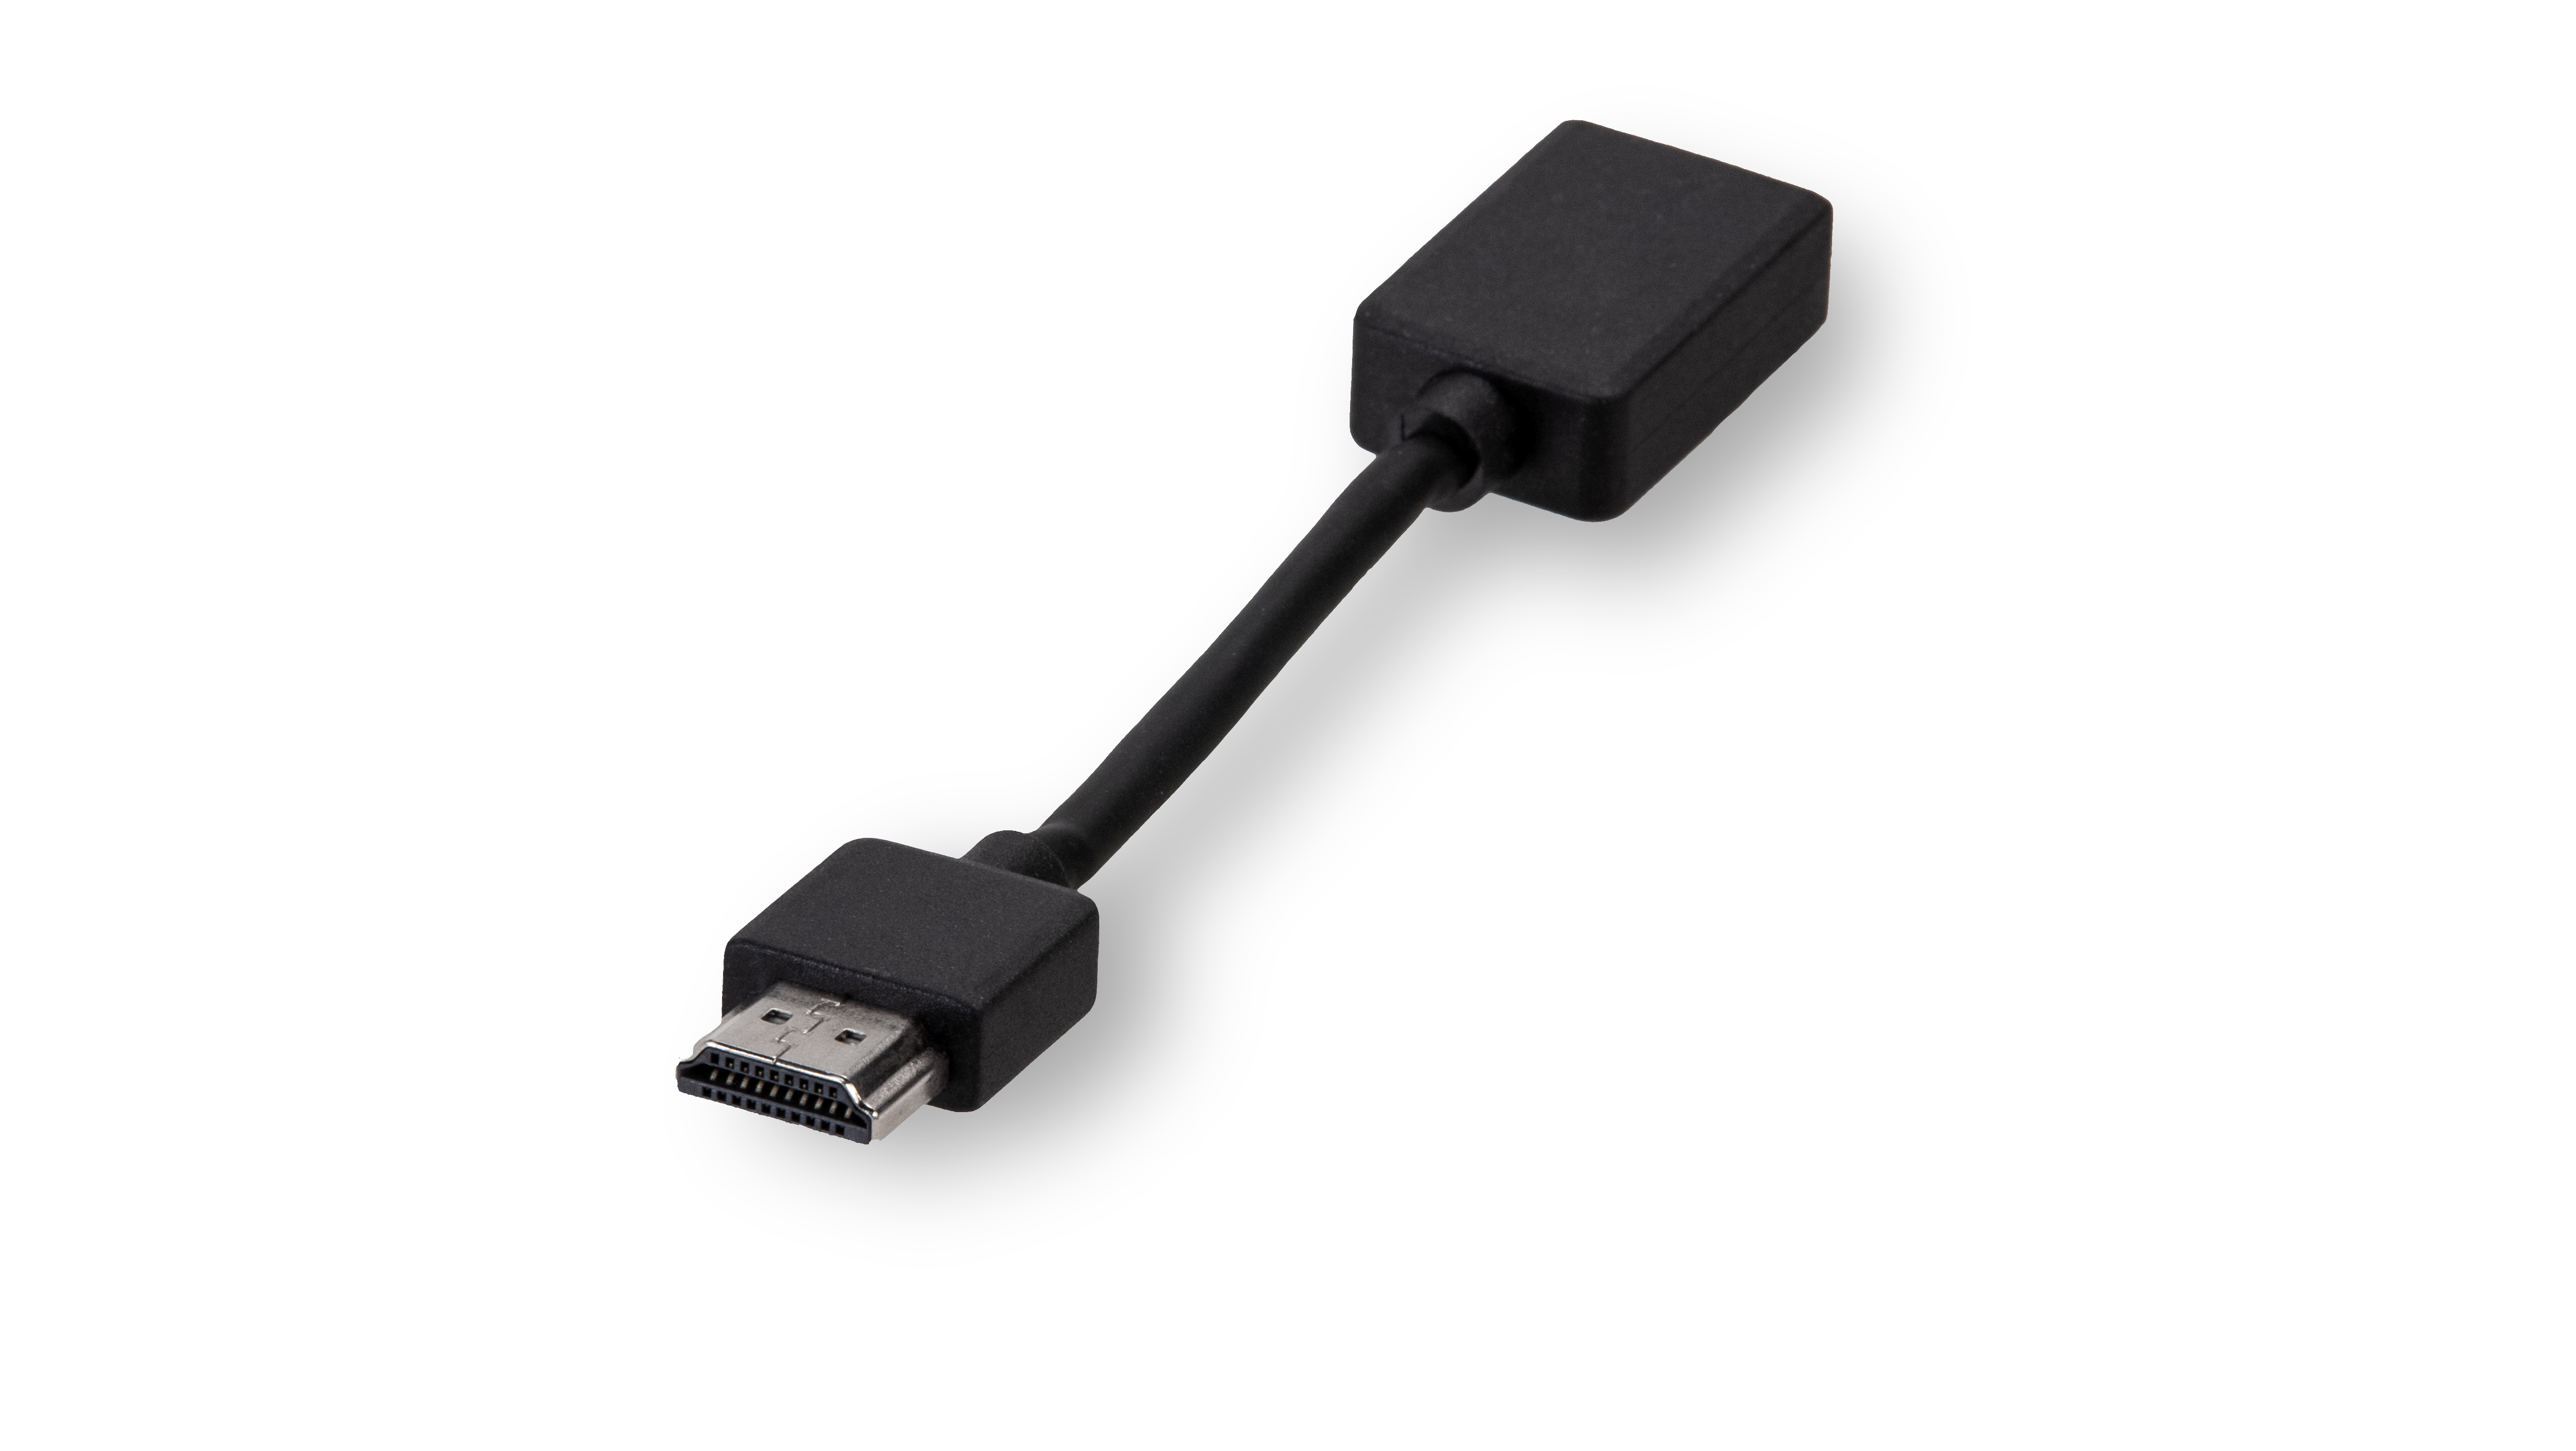 HDMI Male to HDMI Female Cable (17cm)